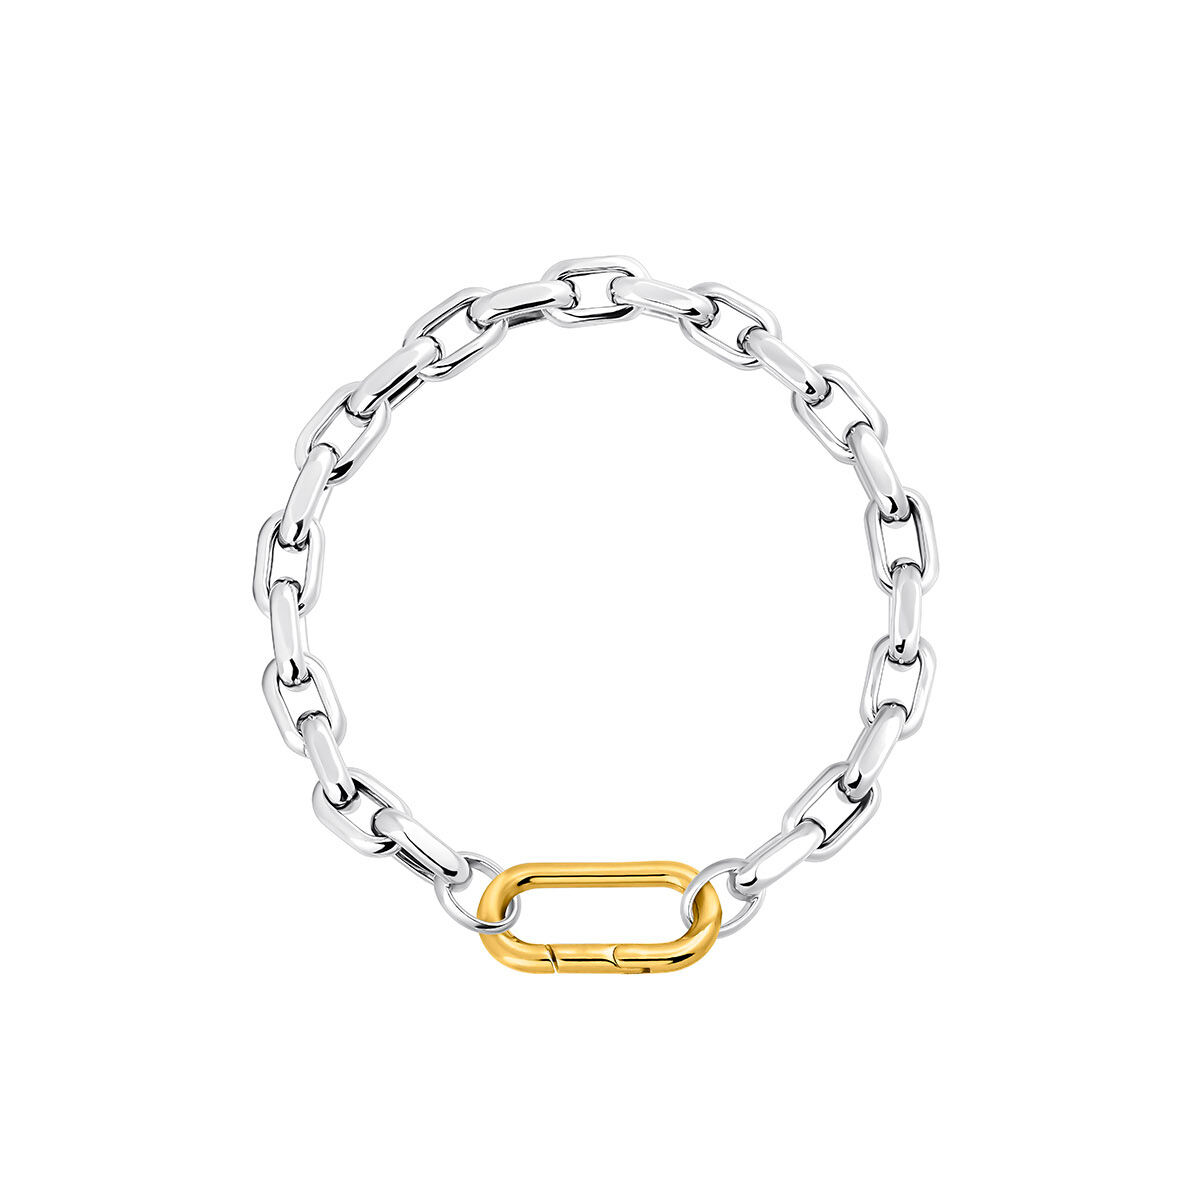 Bracelet avec une chaîne maille forçat en argent , J05336-01-19, hi-res